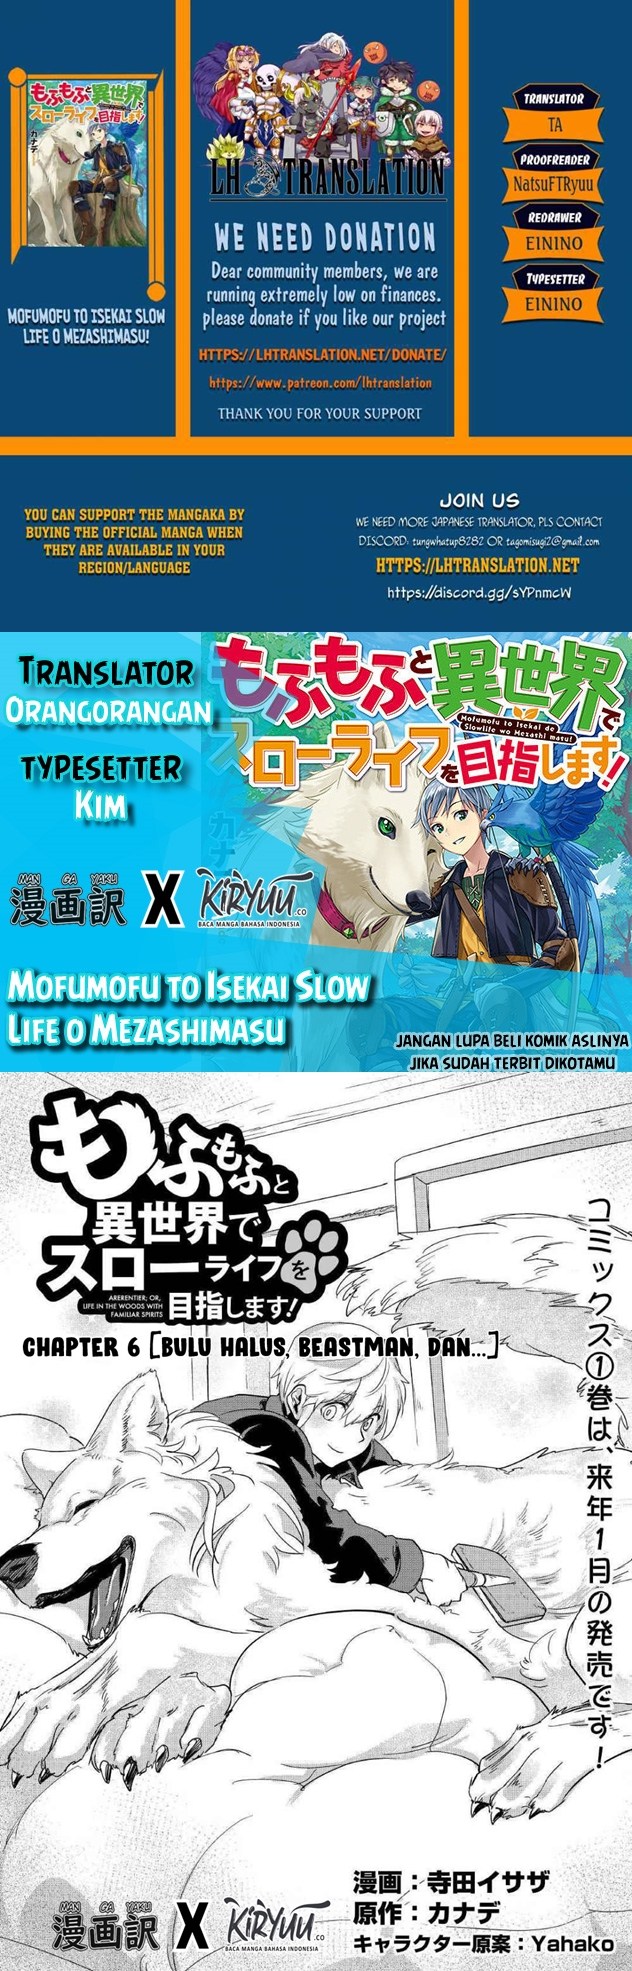 Mofumofu to Isekai Slow Life o Mezashimasu! Chapter 6